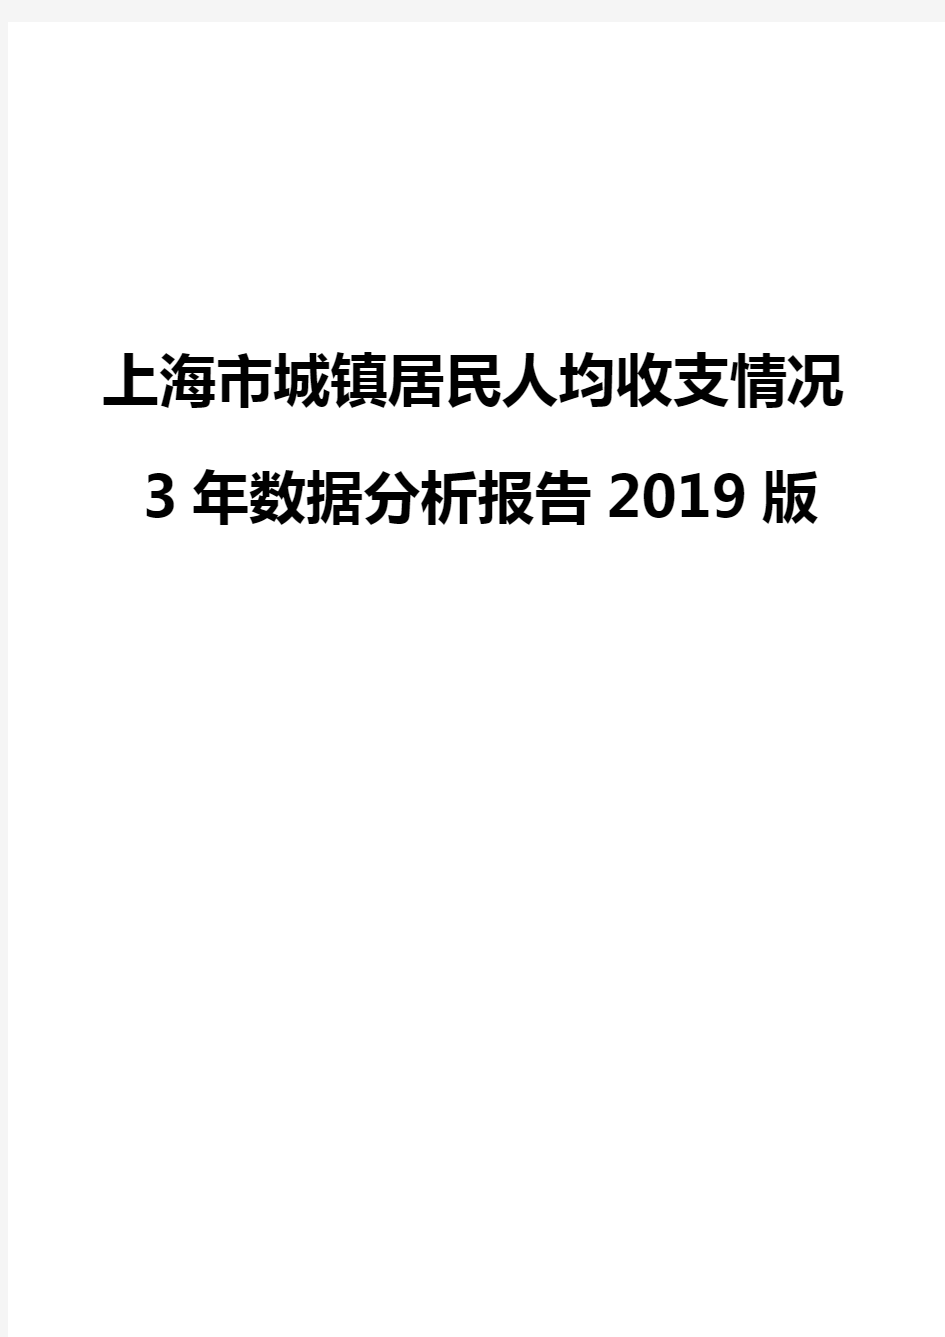 上海市城镇居民人均收支情况3年数据分析报告2019版